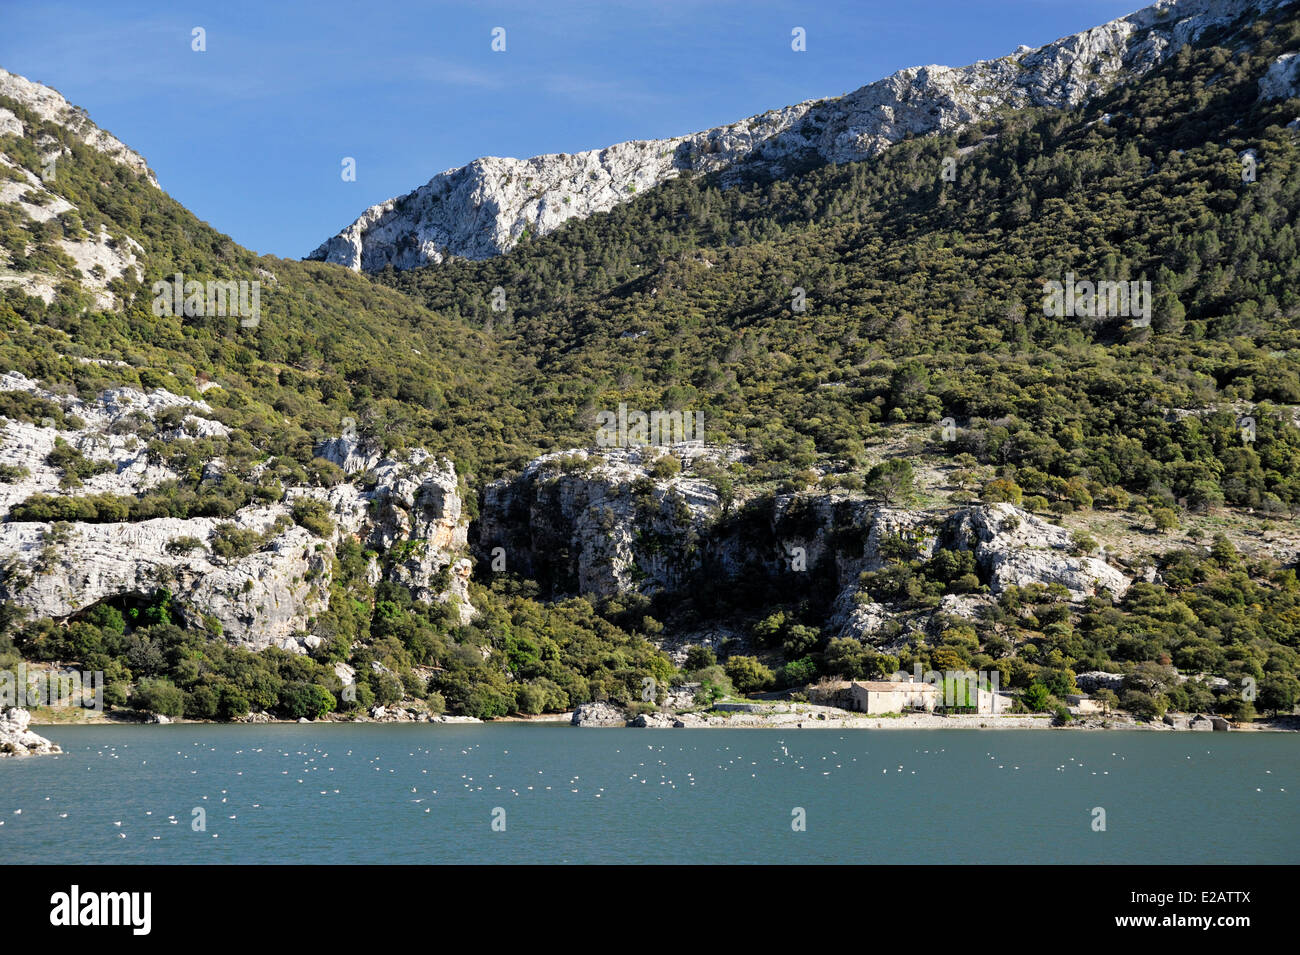 España, Islas Baleares, Mallorca, Gorg Blau, el lago y la presa, aves de color blanco sobre el agua Foto de stock